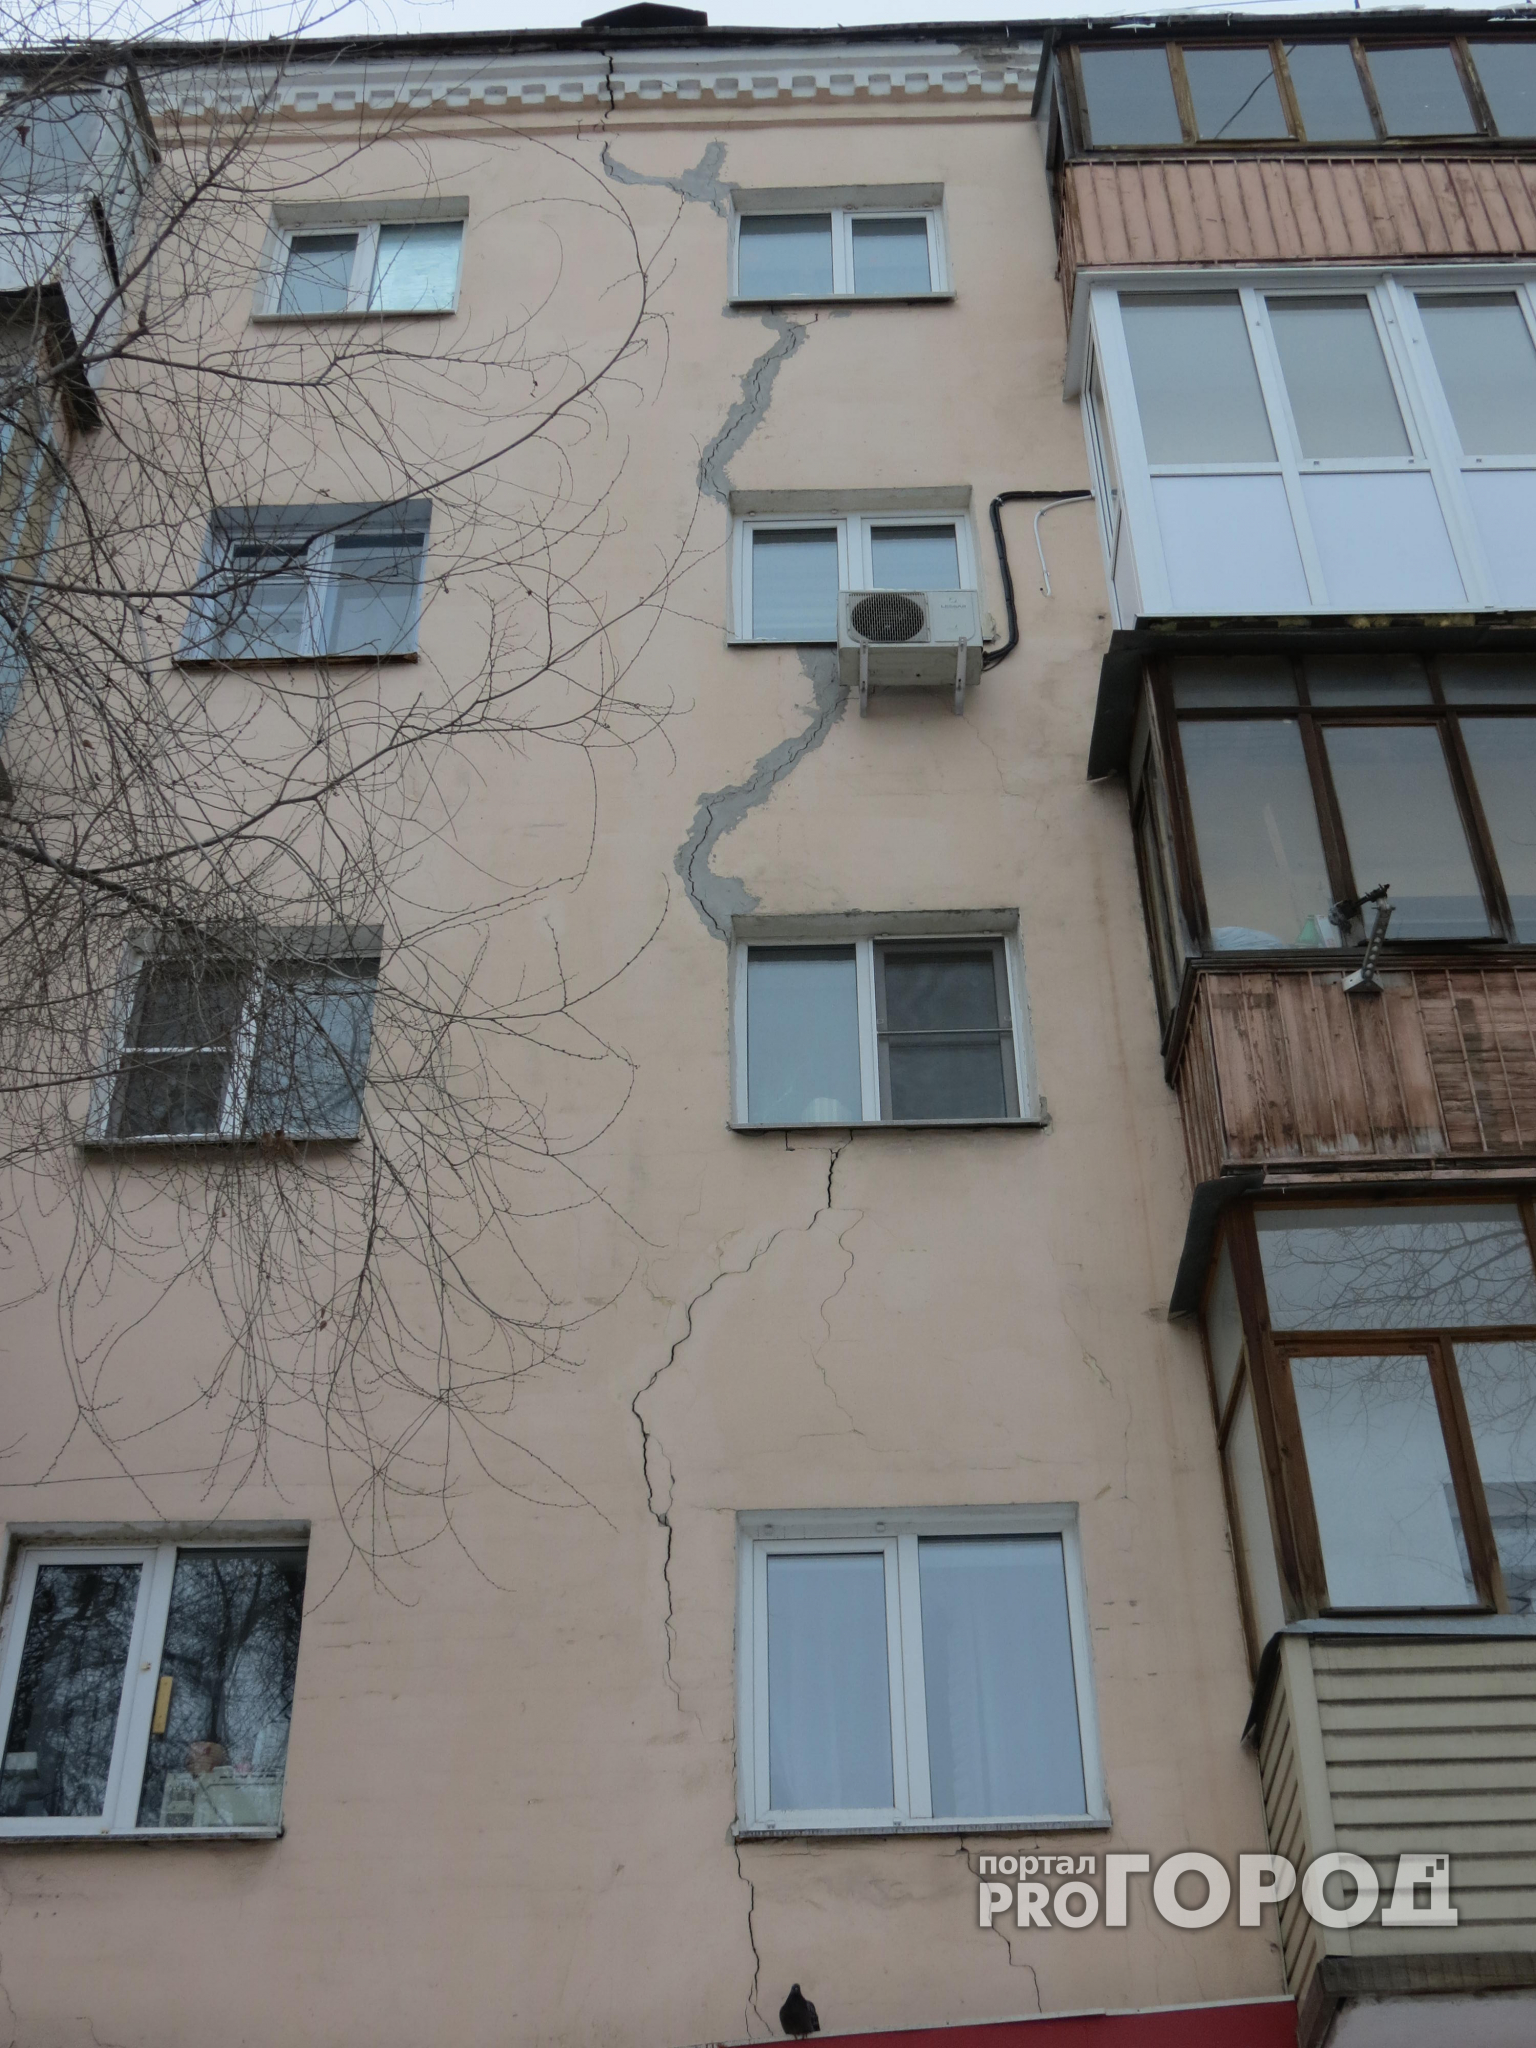 В Нижнем Новгороде сократят расходы на капремонт домов в четыре раза